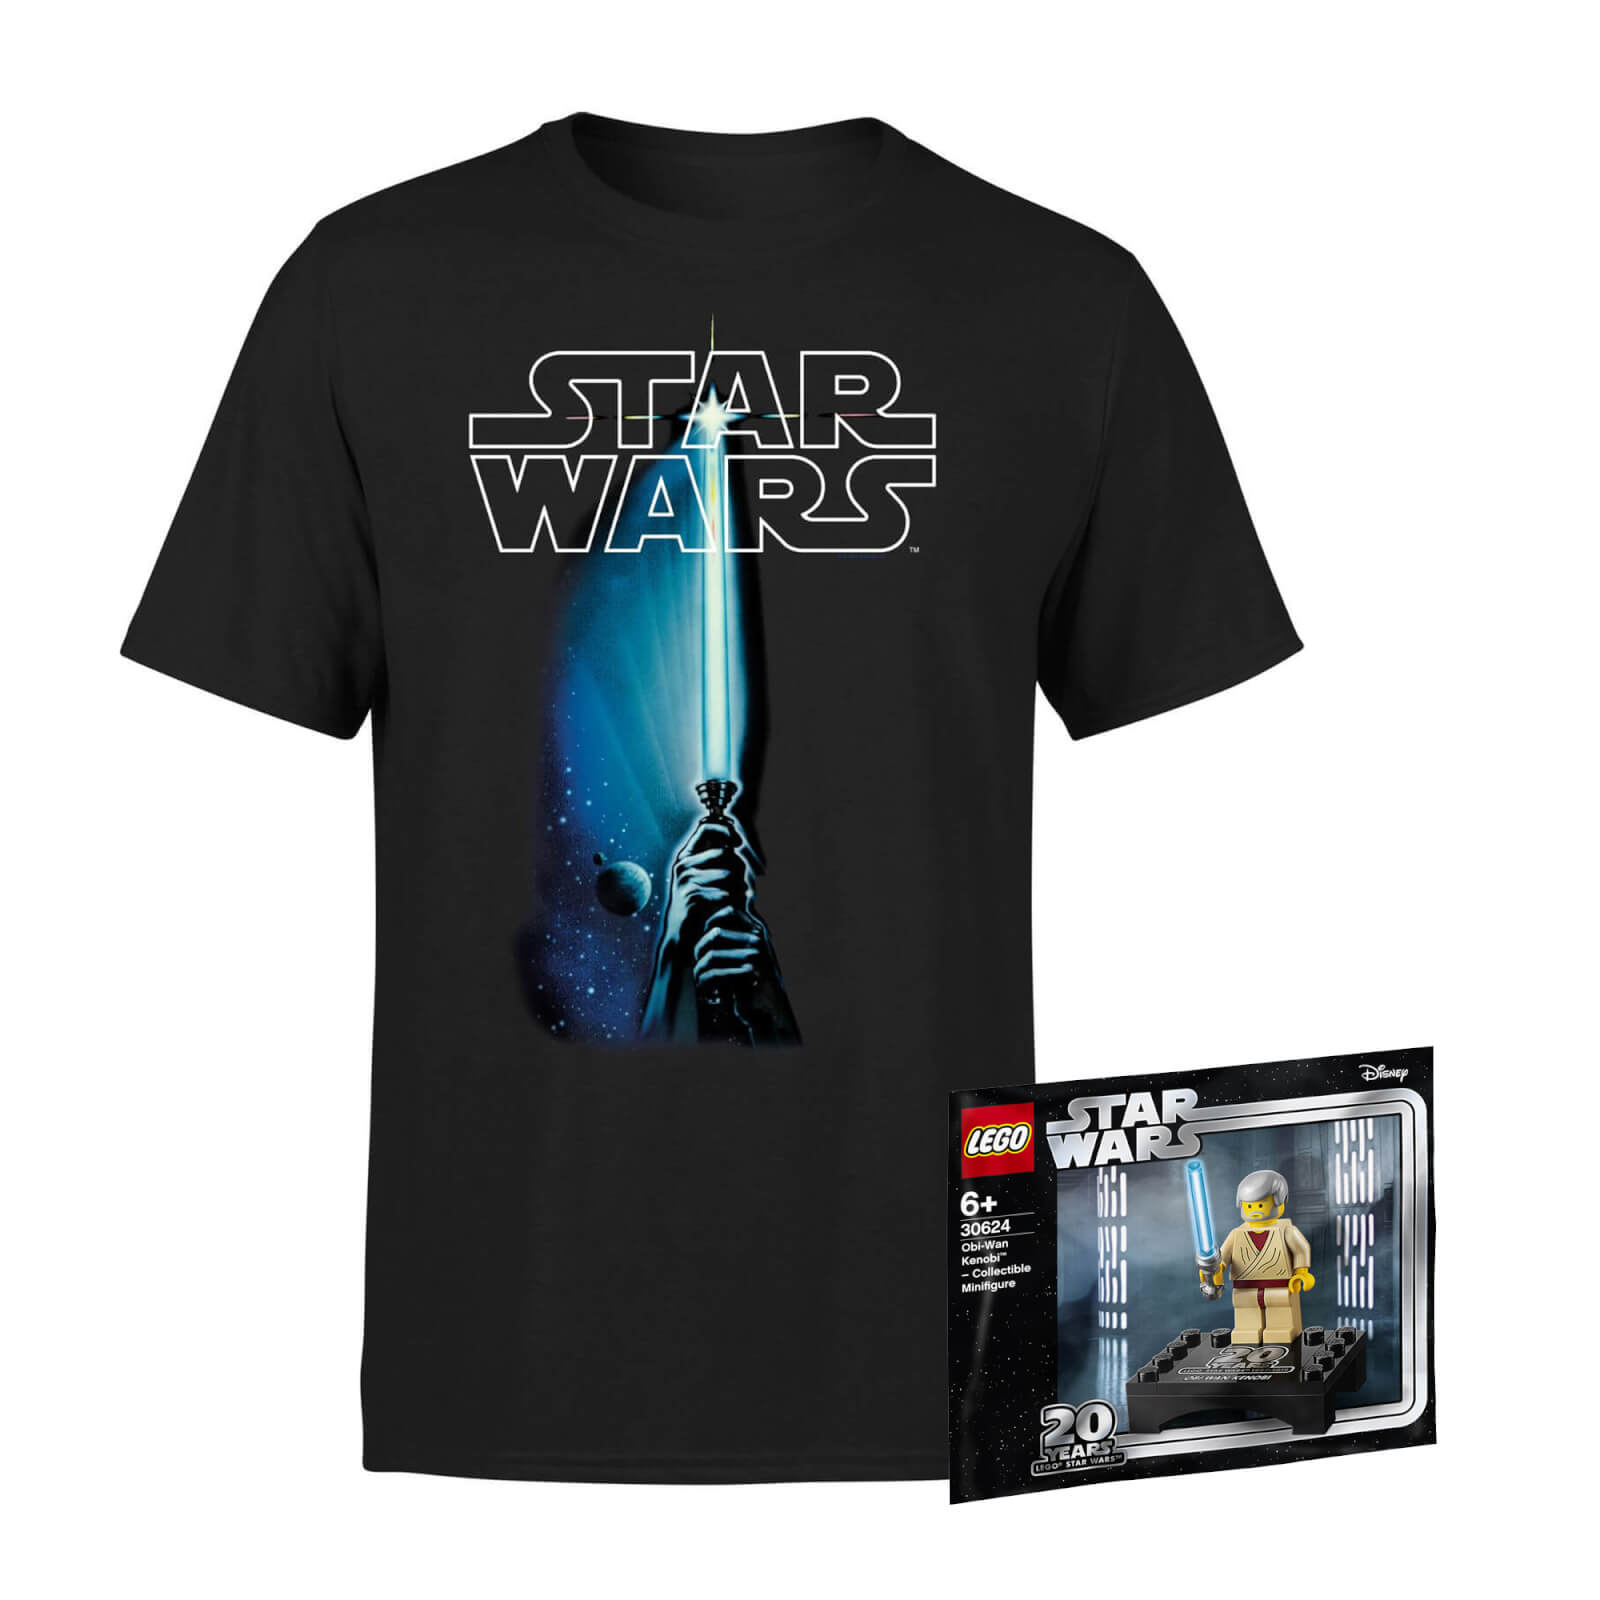 Star Wars Tee & LEGO Minifigure Bundle - Kids' - 3-4 Years von Star Wars